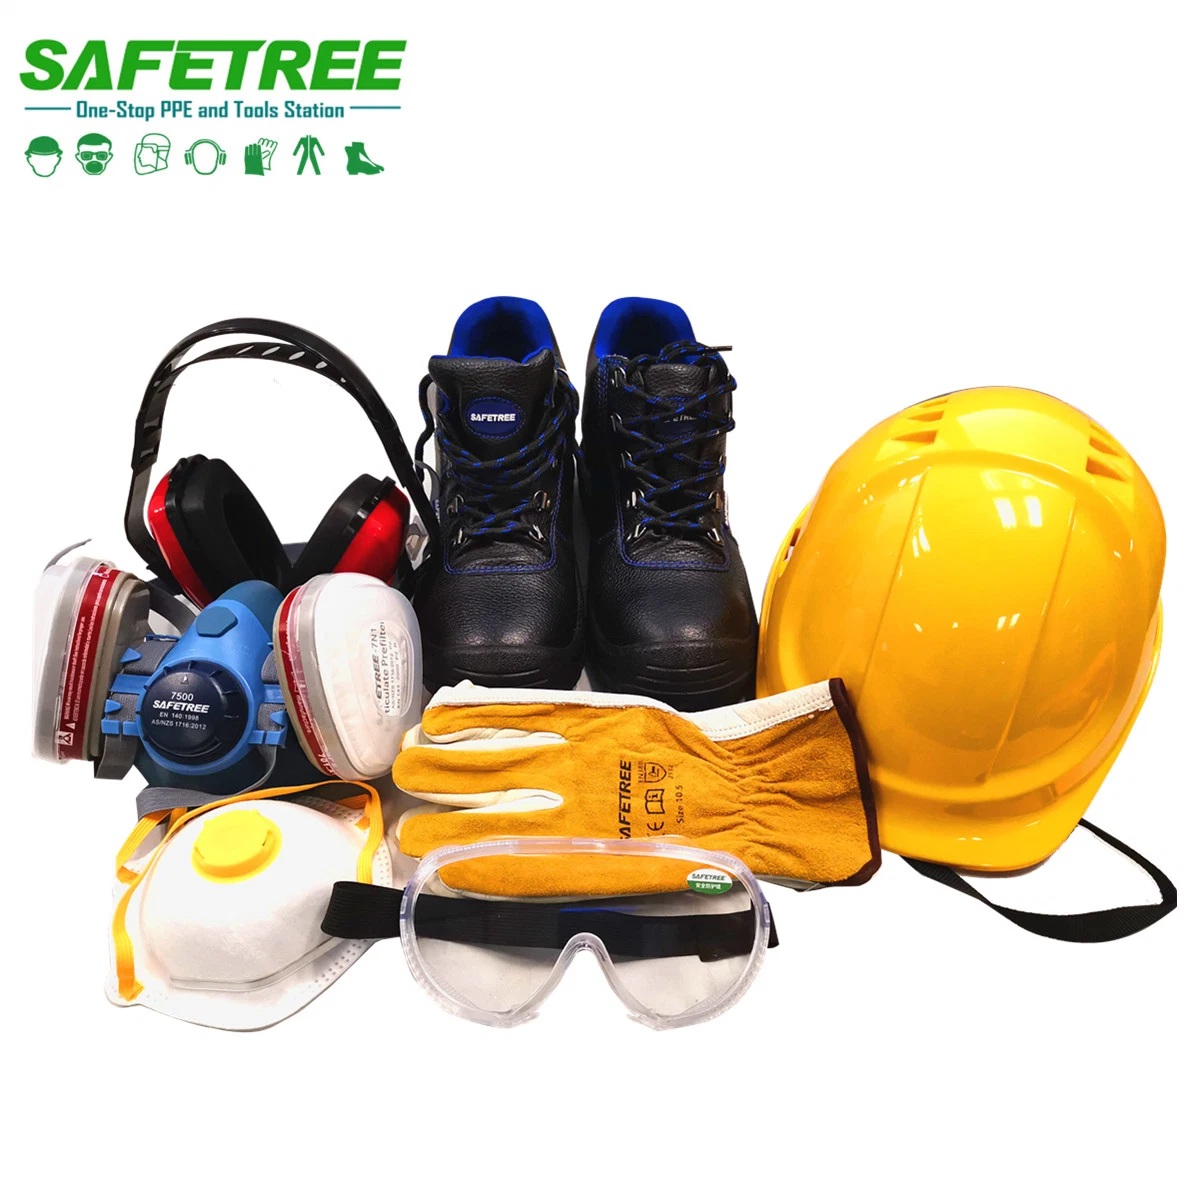 معدات الحماية الشخصية معدات السلامة الشخصية معدات السلامة للتشييد، والتعدين، والكهرباء